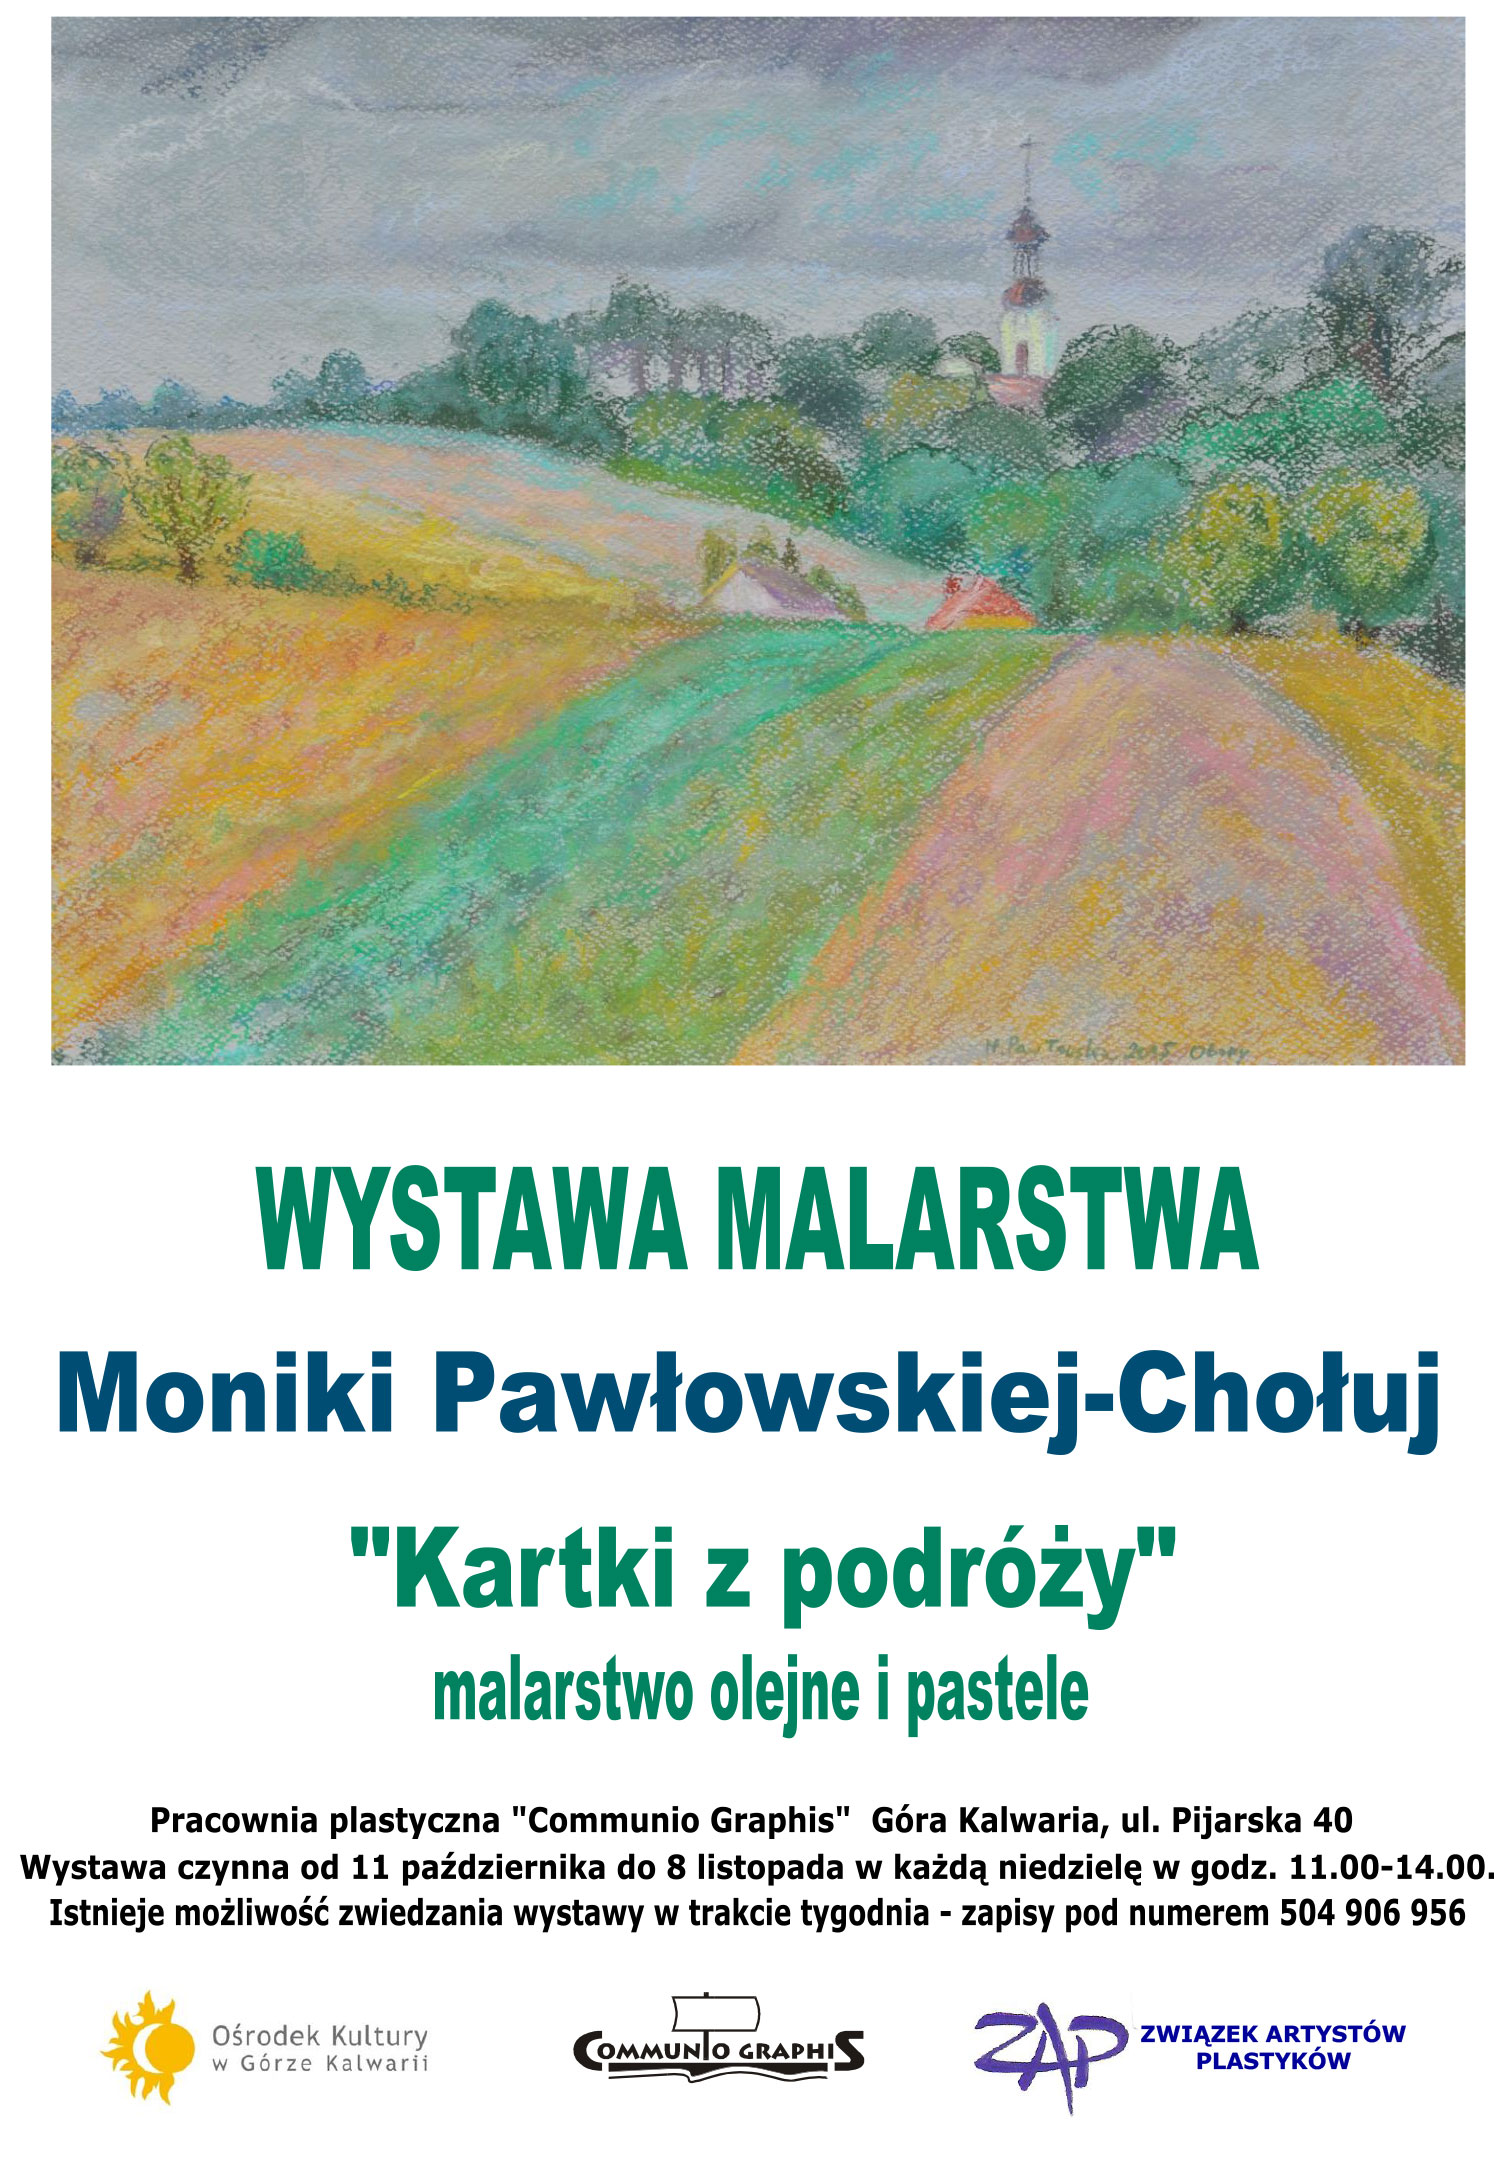 Kartki z podróży - wystawa malarstwa Moniki Pawłowska-Chołuj w Górze Kalwarii